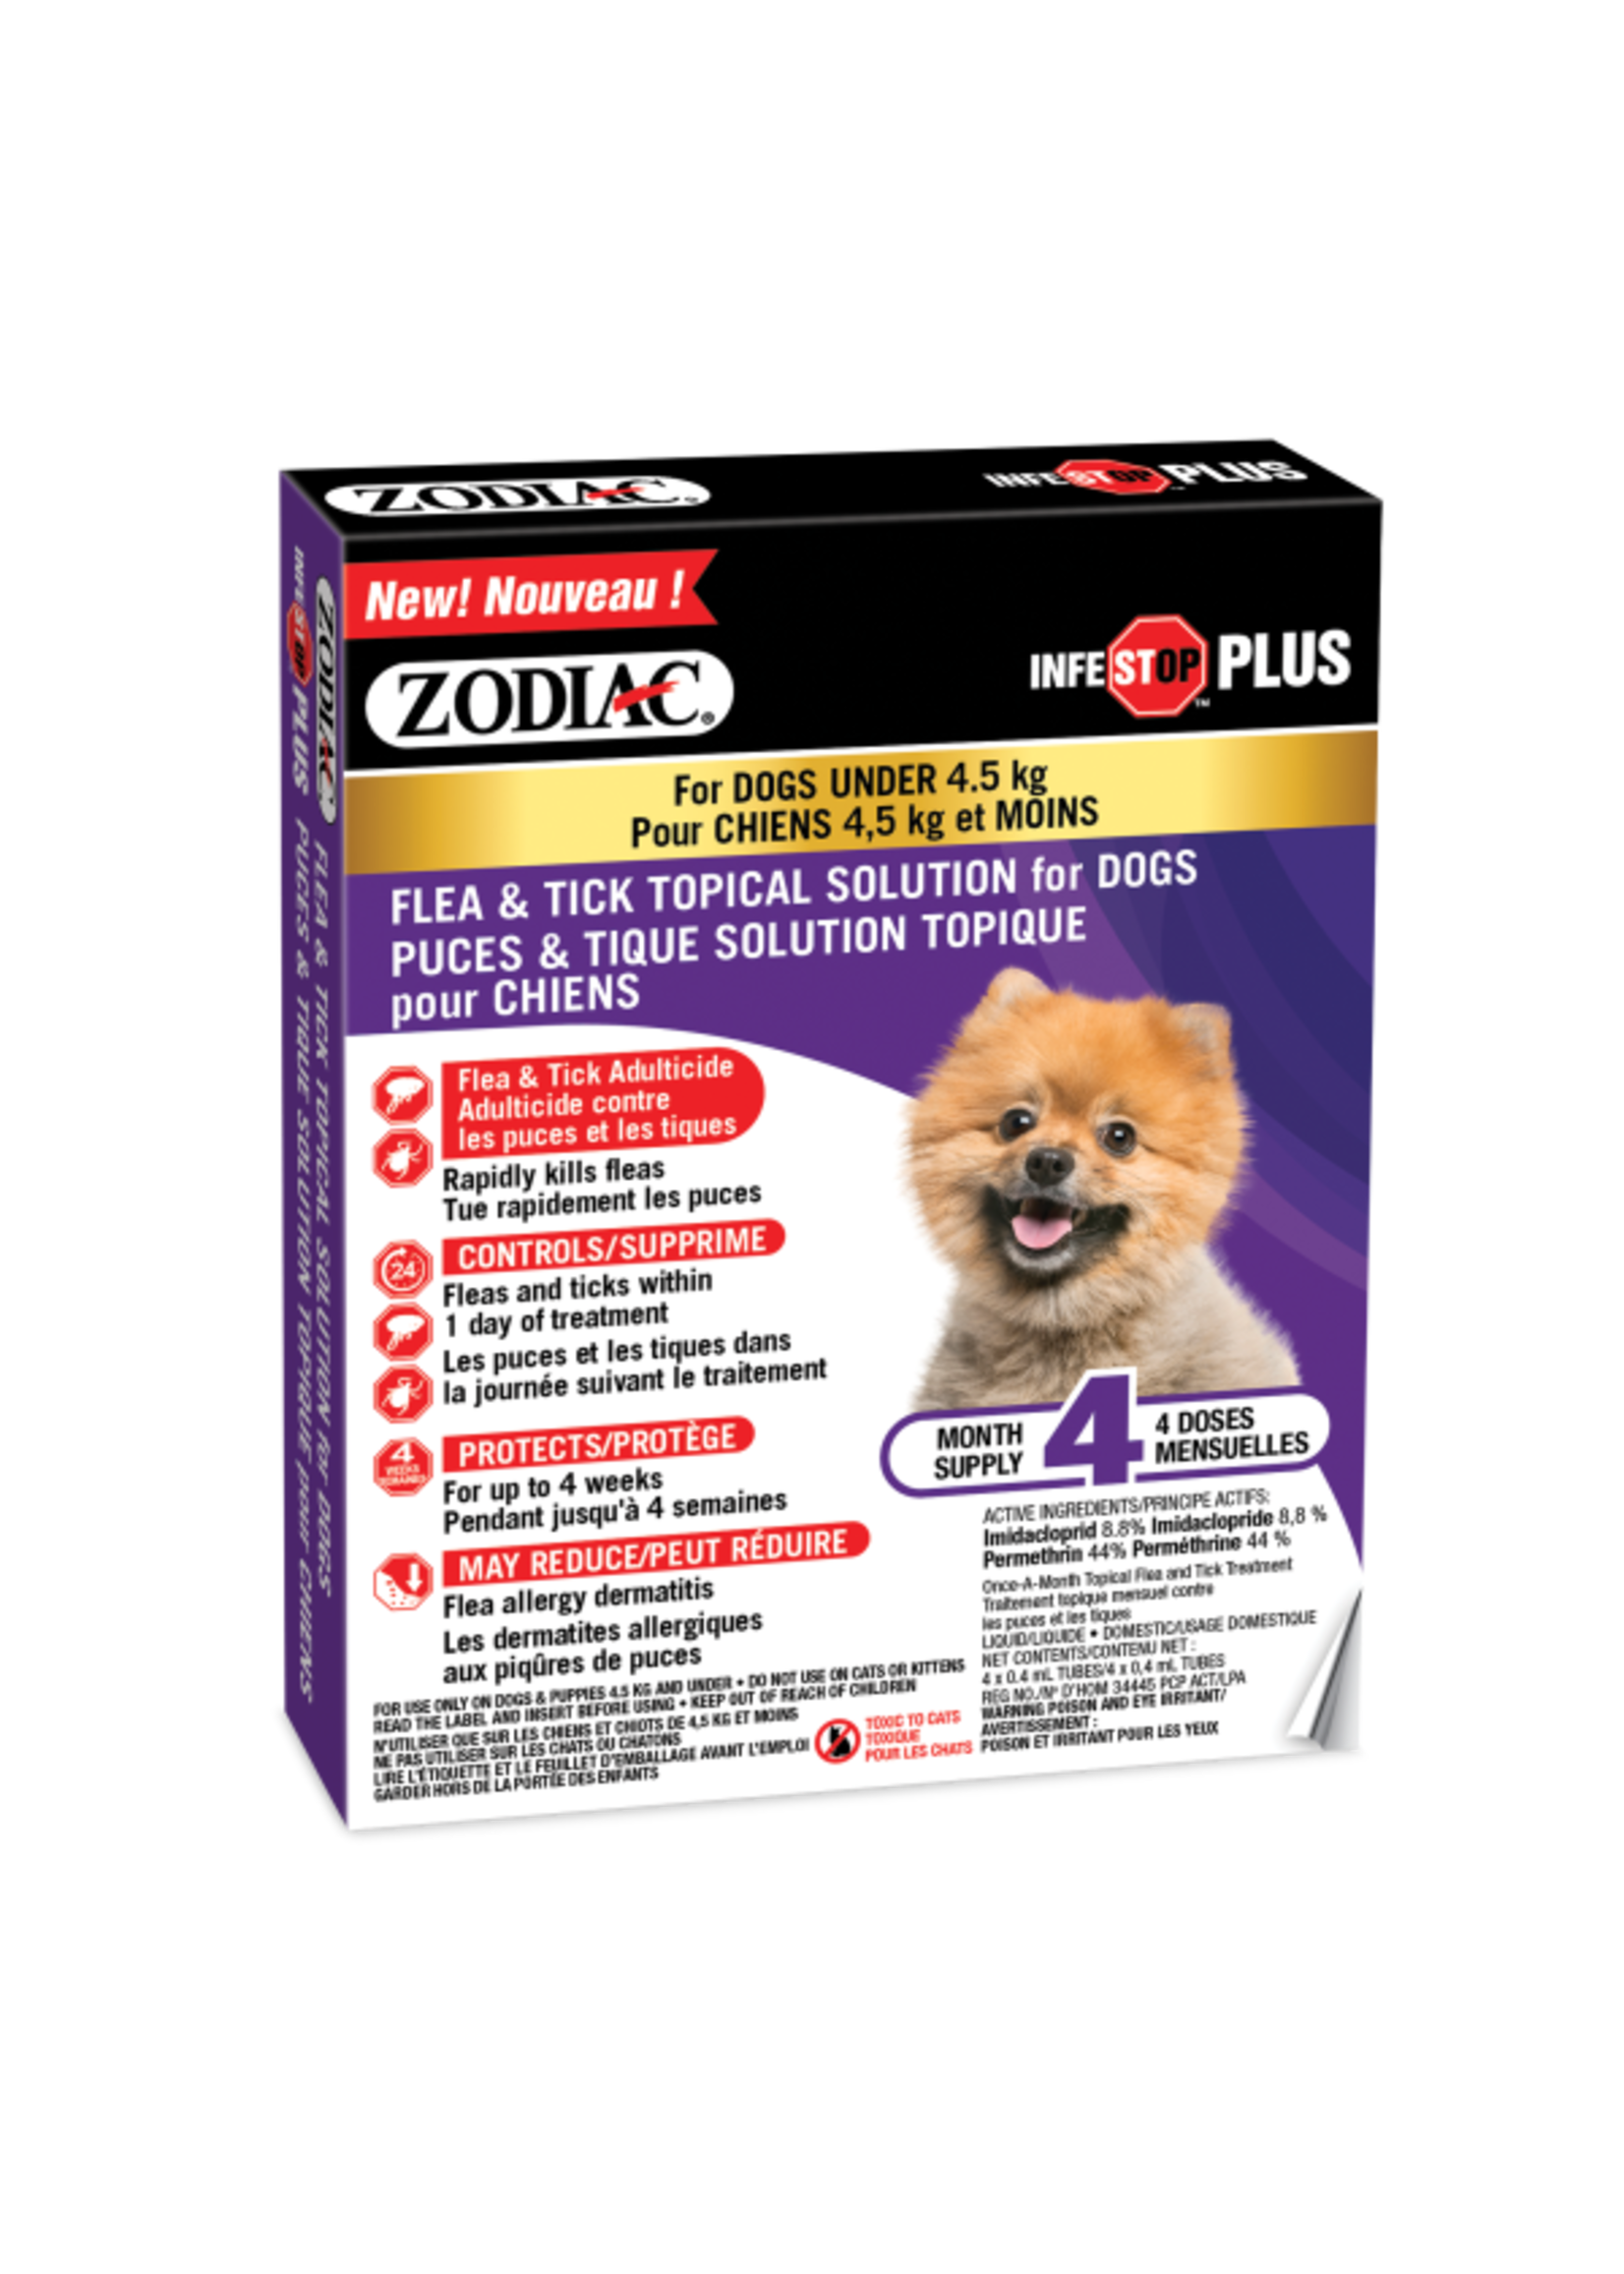 Zodiac Zodiac - Infestop Plus Dogs (Flea & Tick) Under 4.5kg